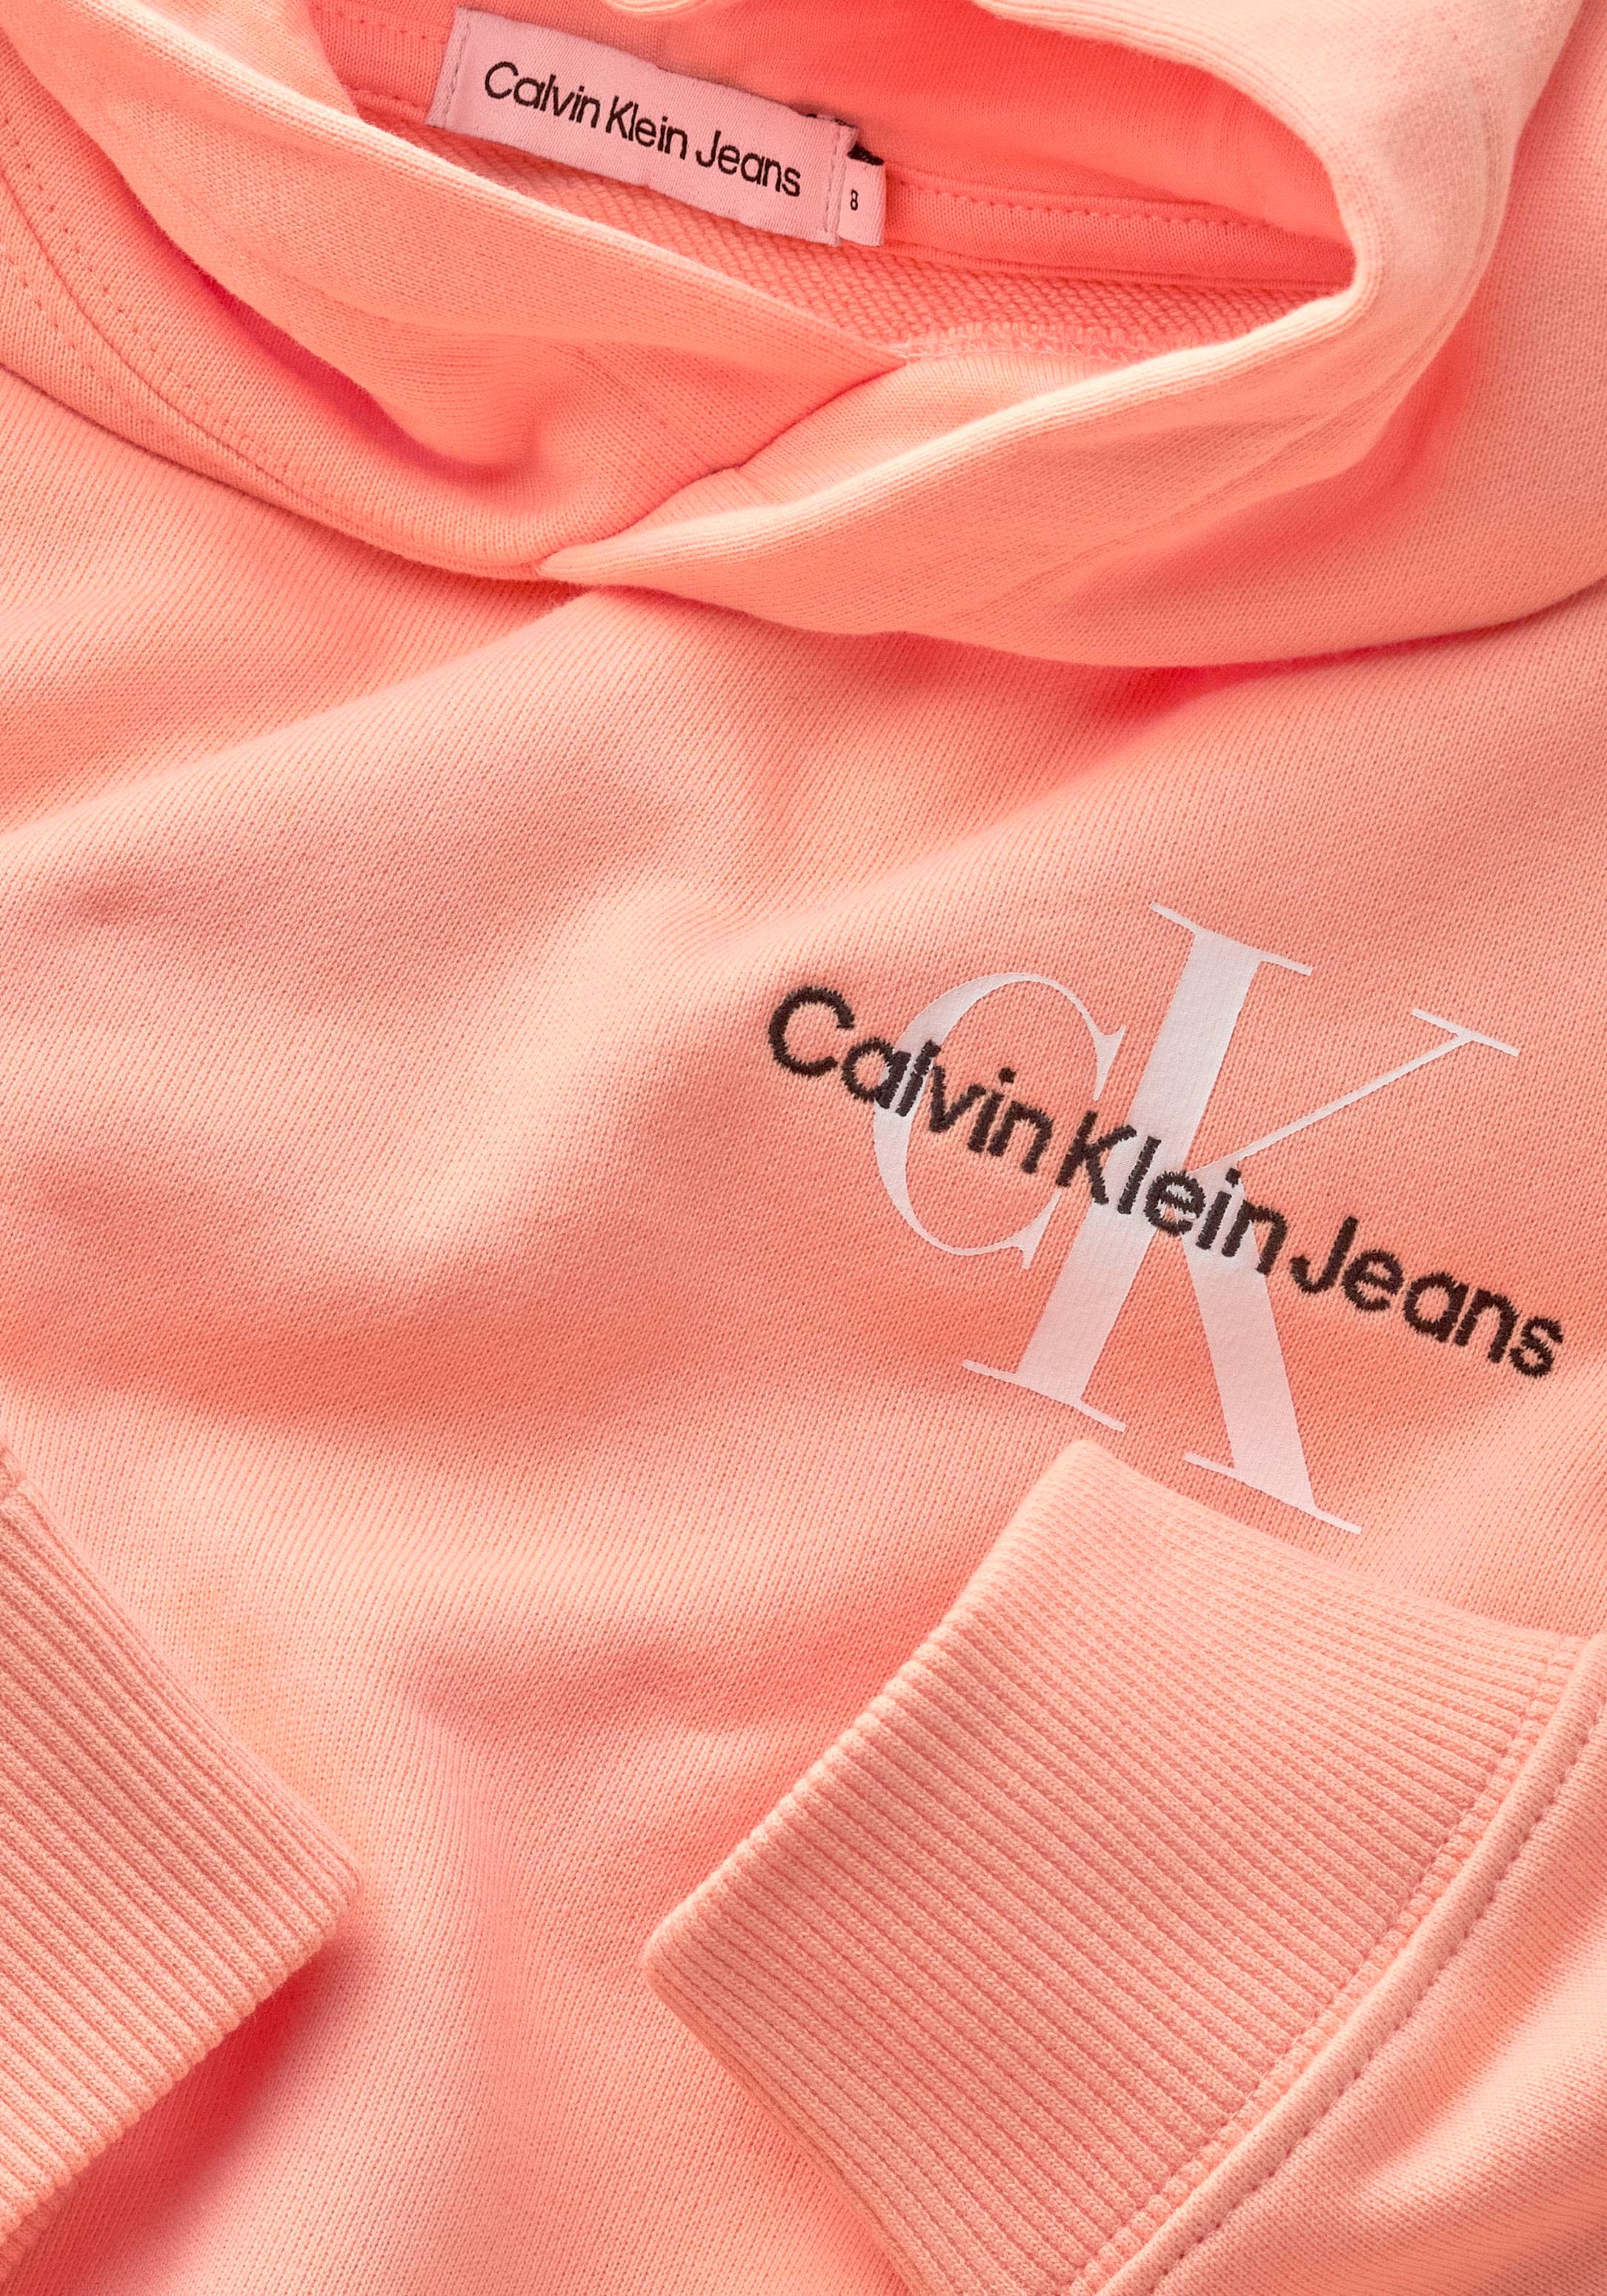 Klein Jeans auf Kapuzensweatshirt, Calvin Jelmoli-Online Klein Junior Kinder Brust Calvin Kids ❤ Logostickerei der Shop MiniMe,mit im entdecken